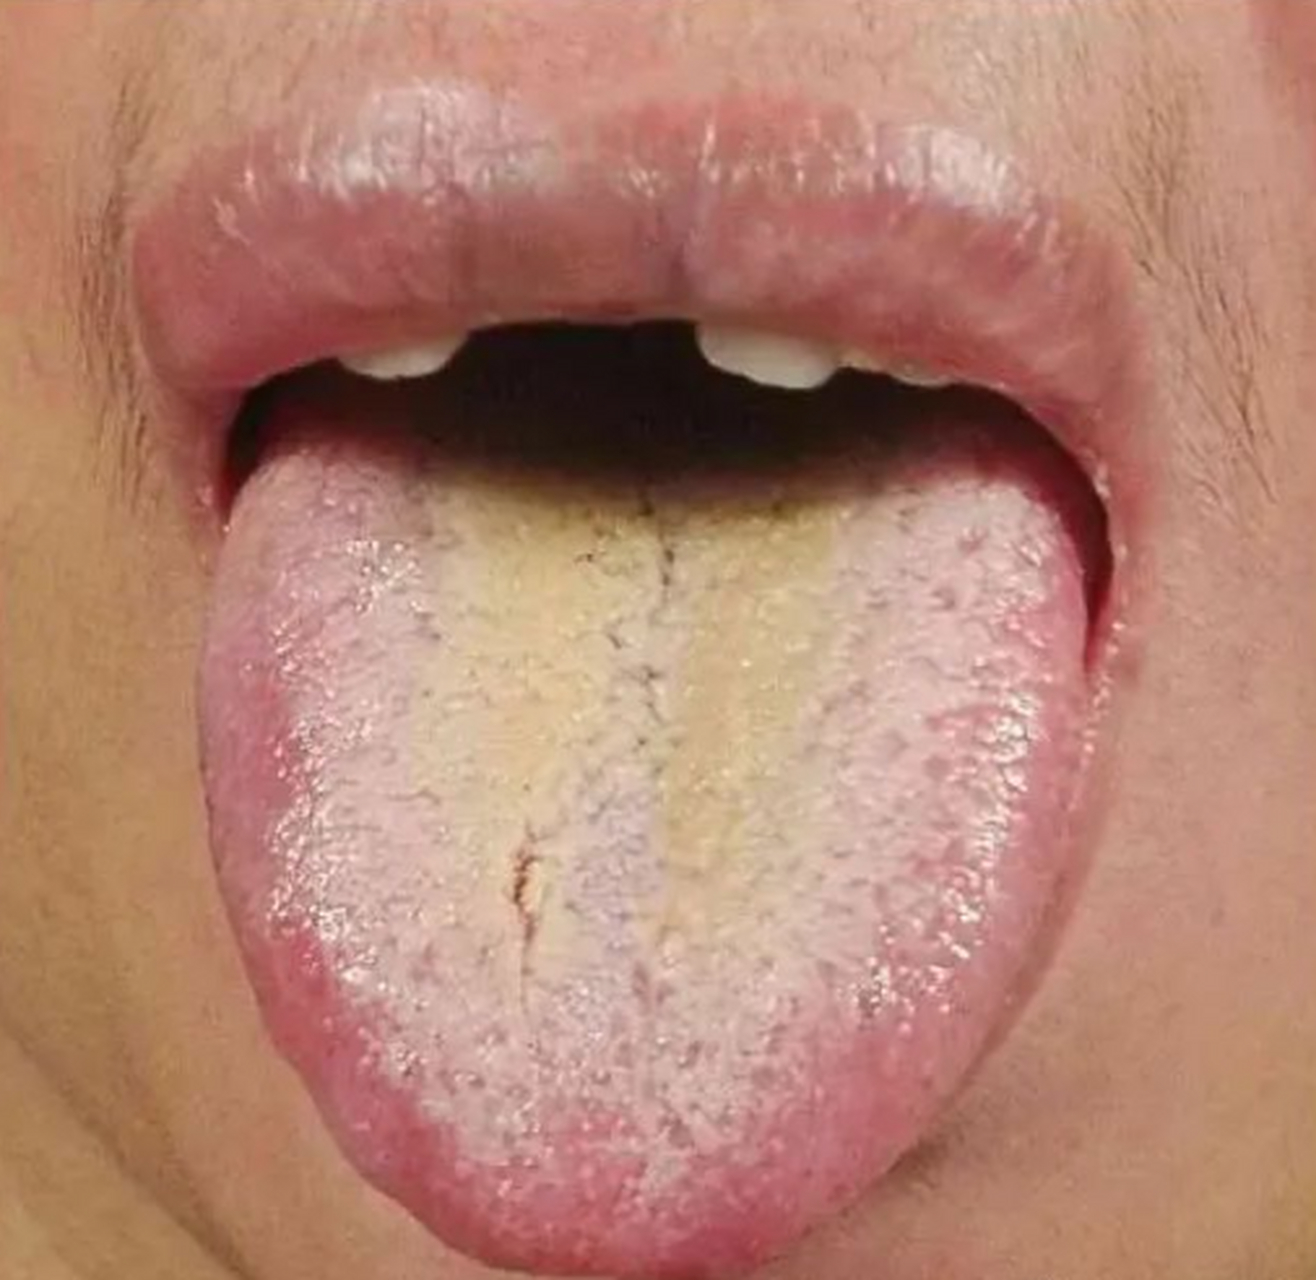 湿热的舌苔是什么样子图片